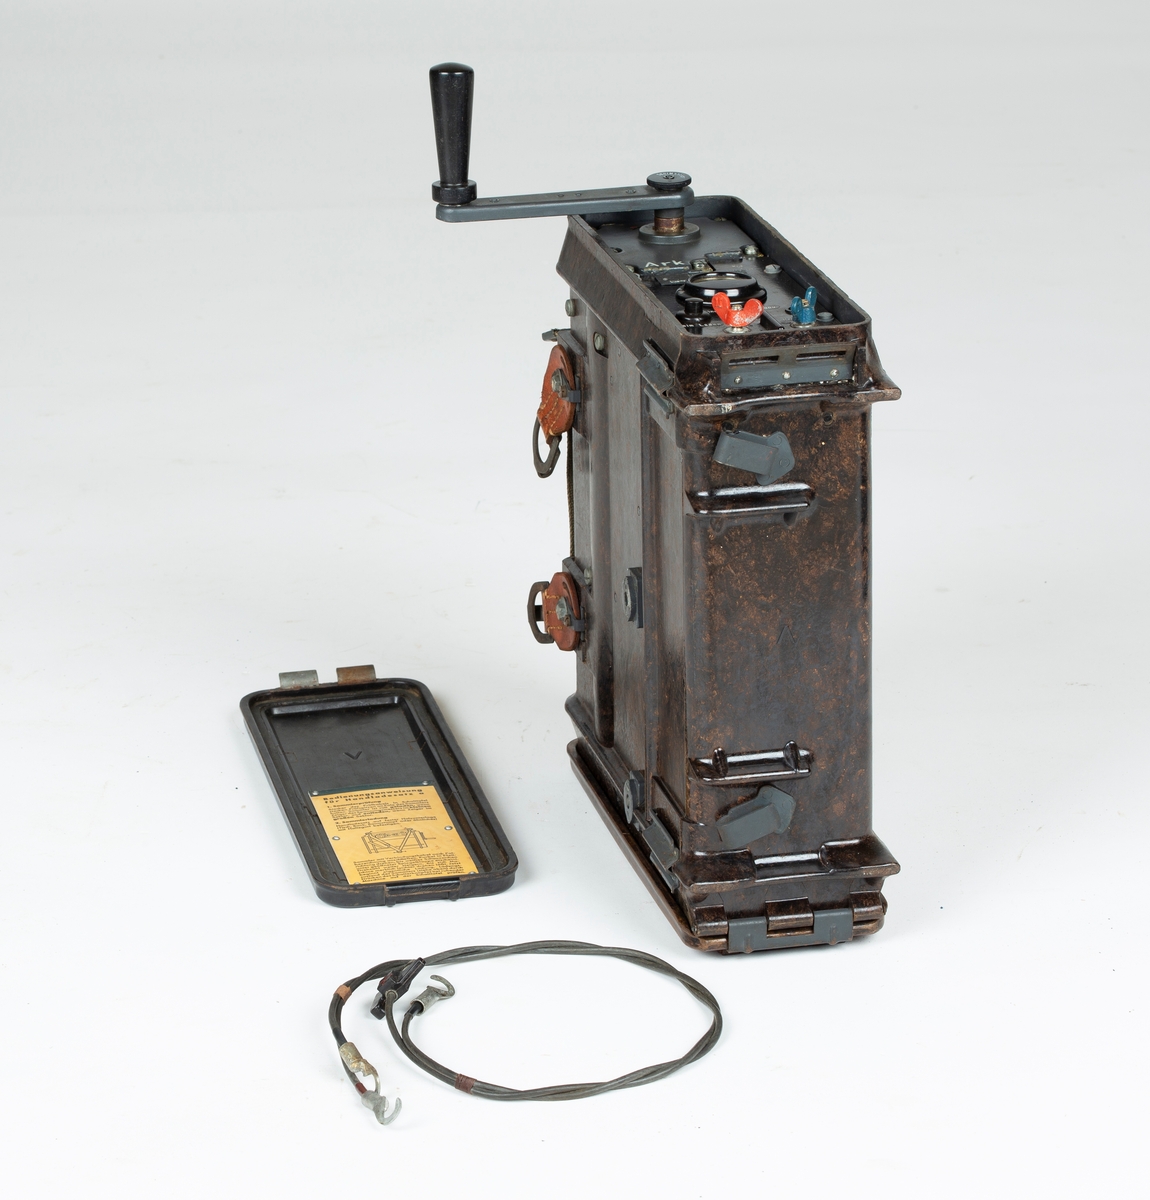 Transportabel generator med sveiv, to kabler. Tyskprodusert, antagelig fra 2. verdenskrig. Til radio og telefonsamband. Tysk bruksanvisning på sidelokk.